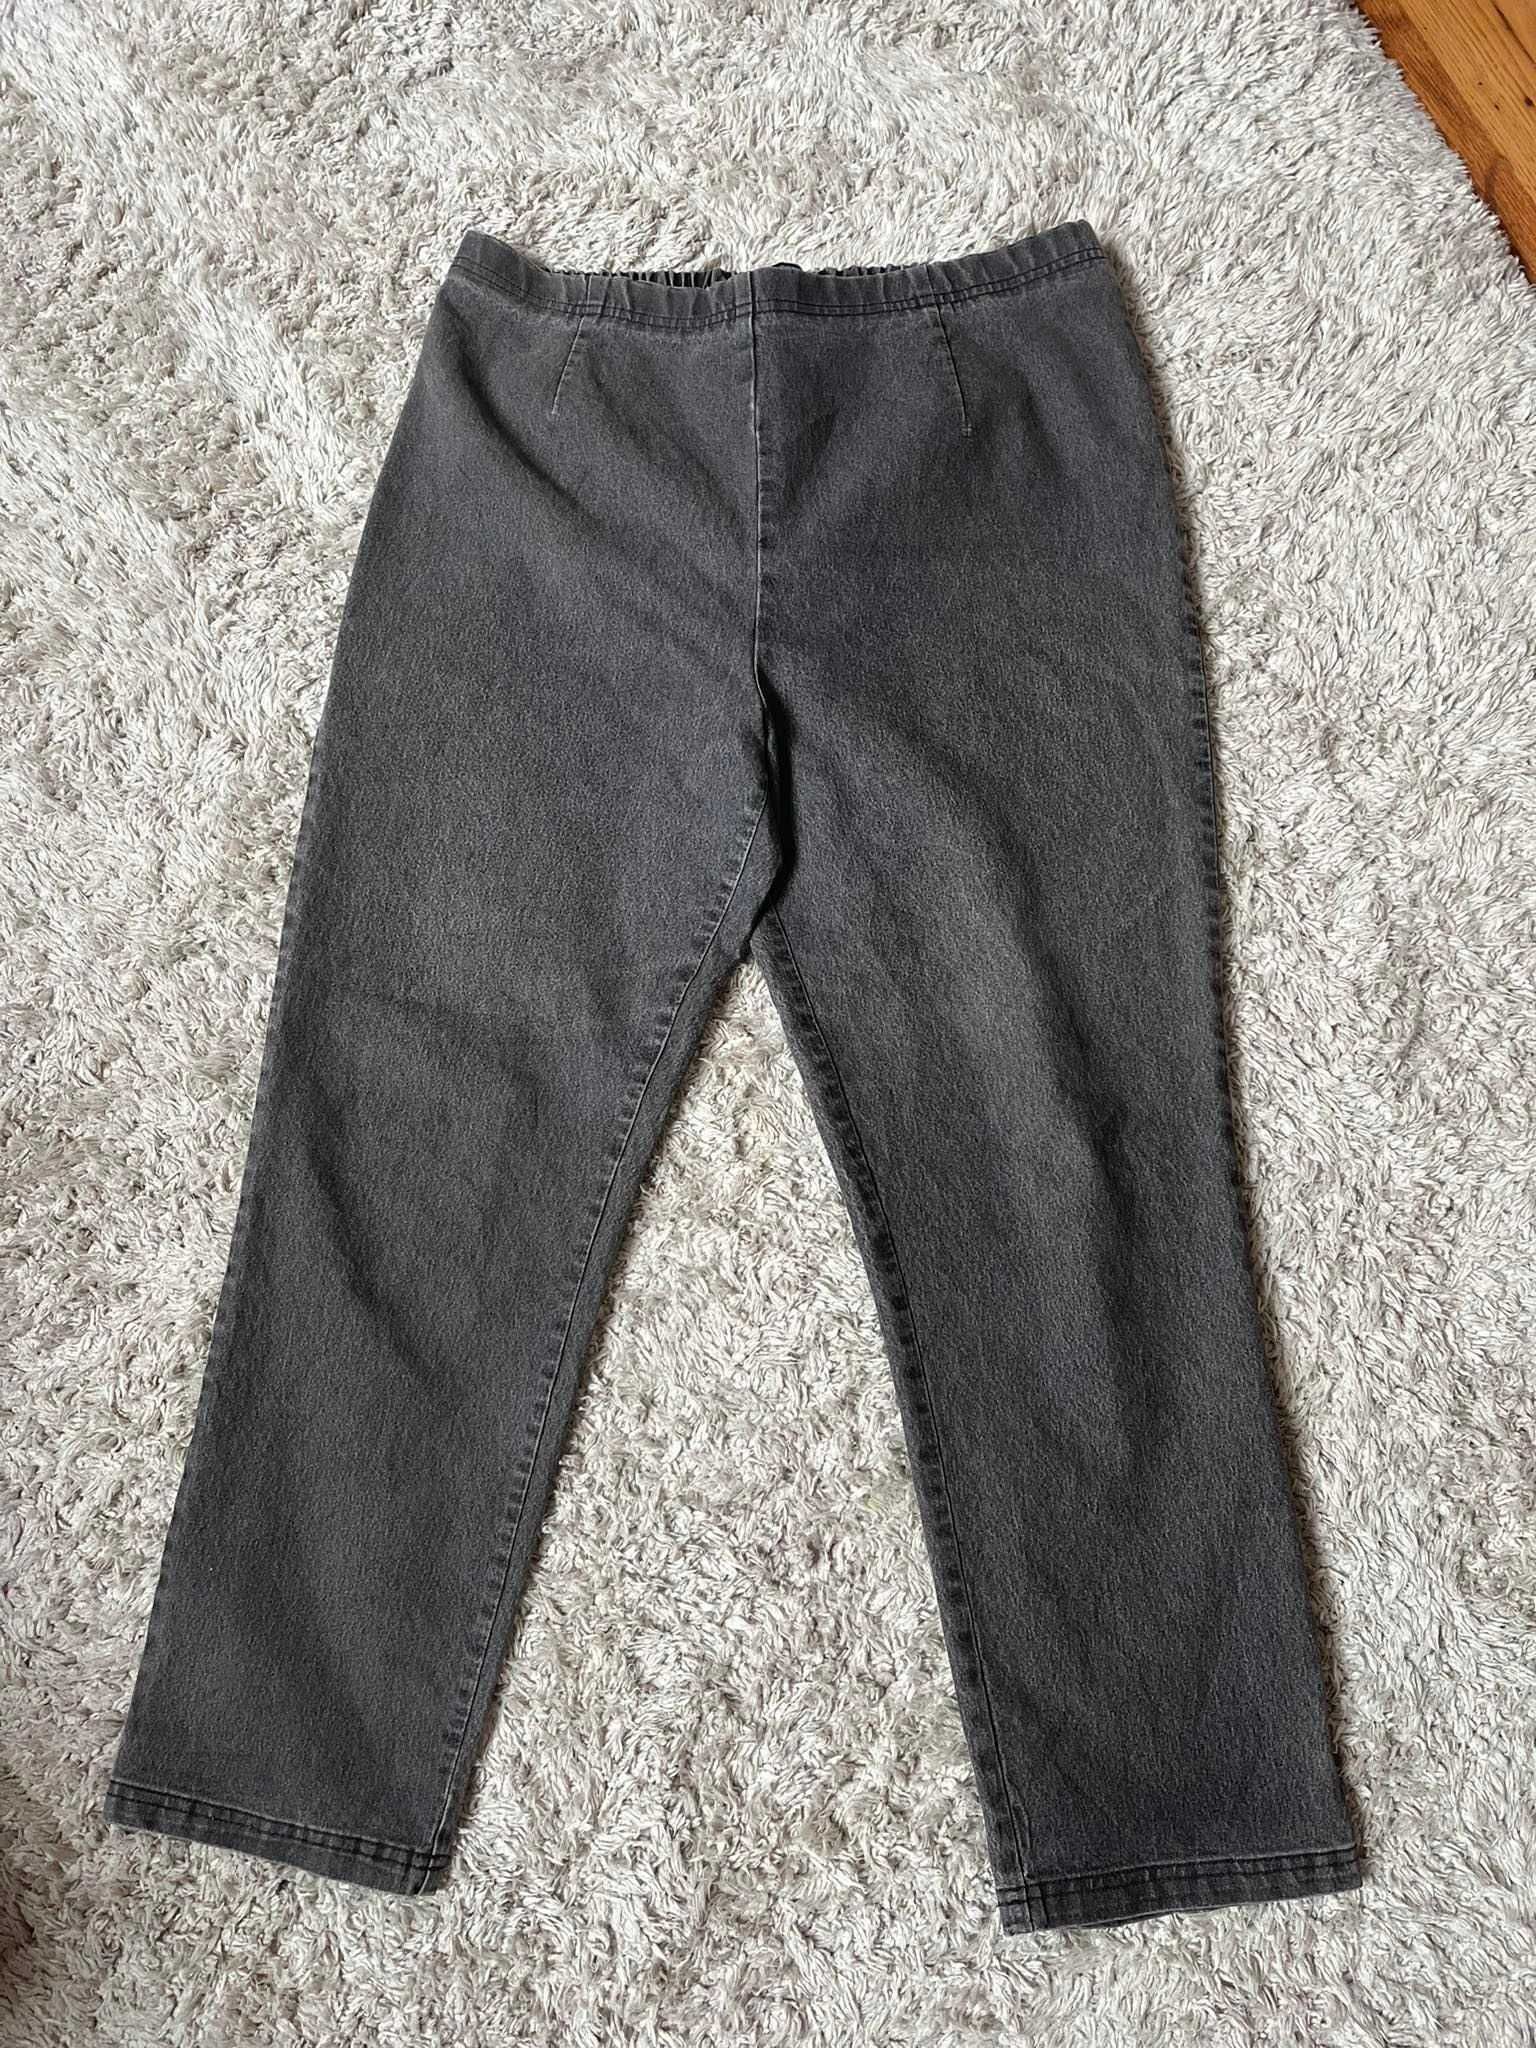 Spodnie jeansowe damskie rozmiar 46 3XL firma Classic